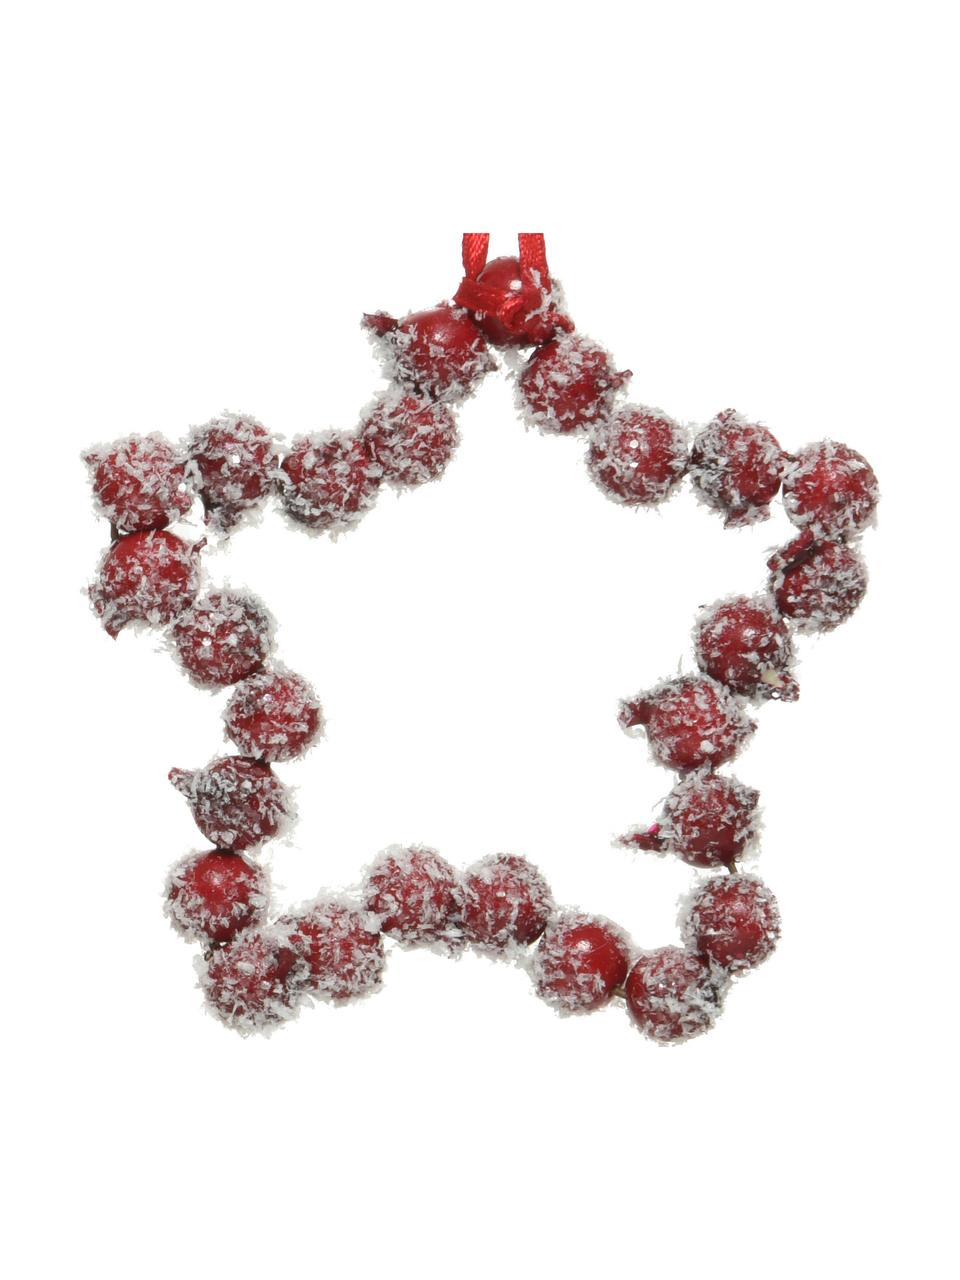 Komplet ozdób choinkowych odpornych na stłuczenia Heart & Star, 4 elem., Czerwony, biały, S 9 x W 9 cm